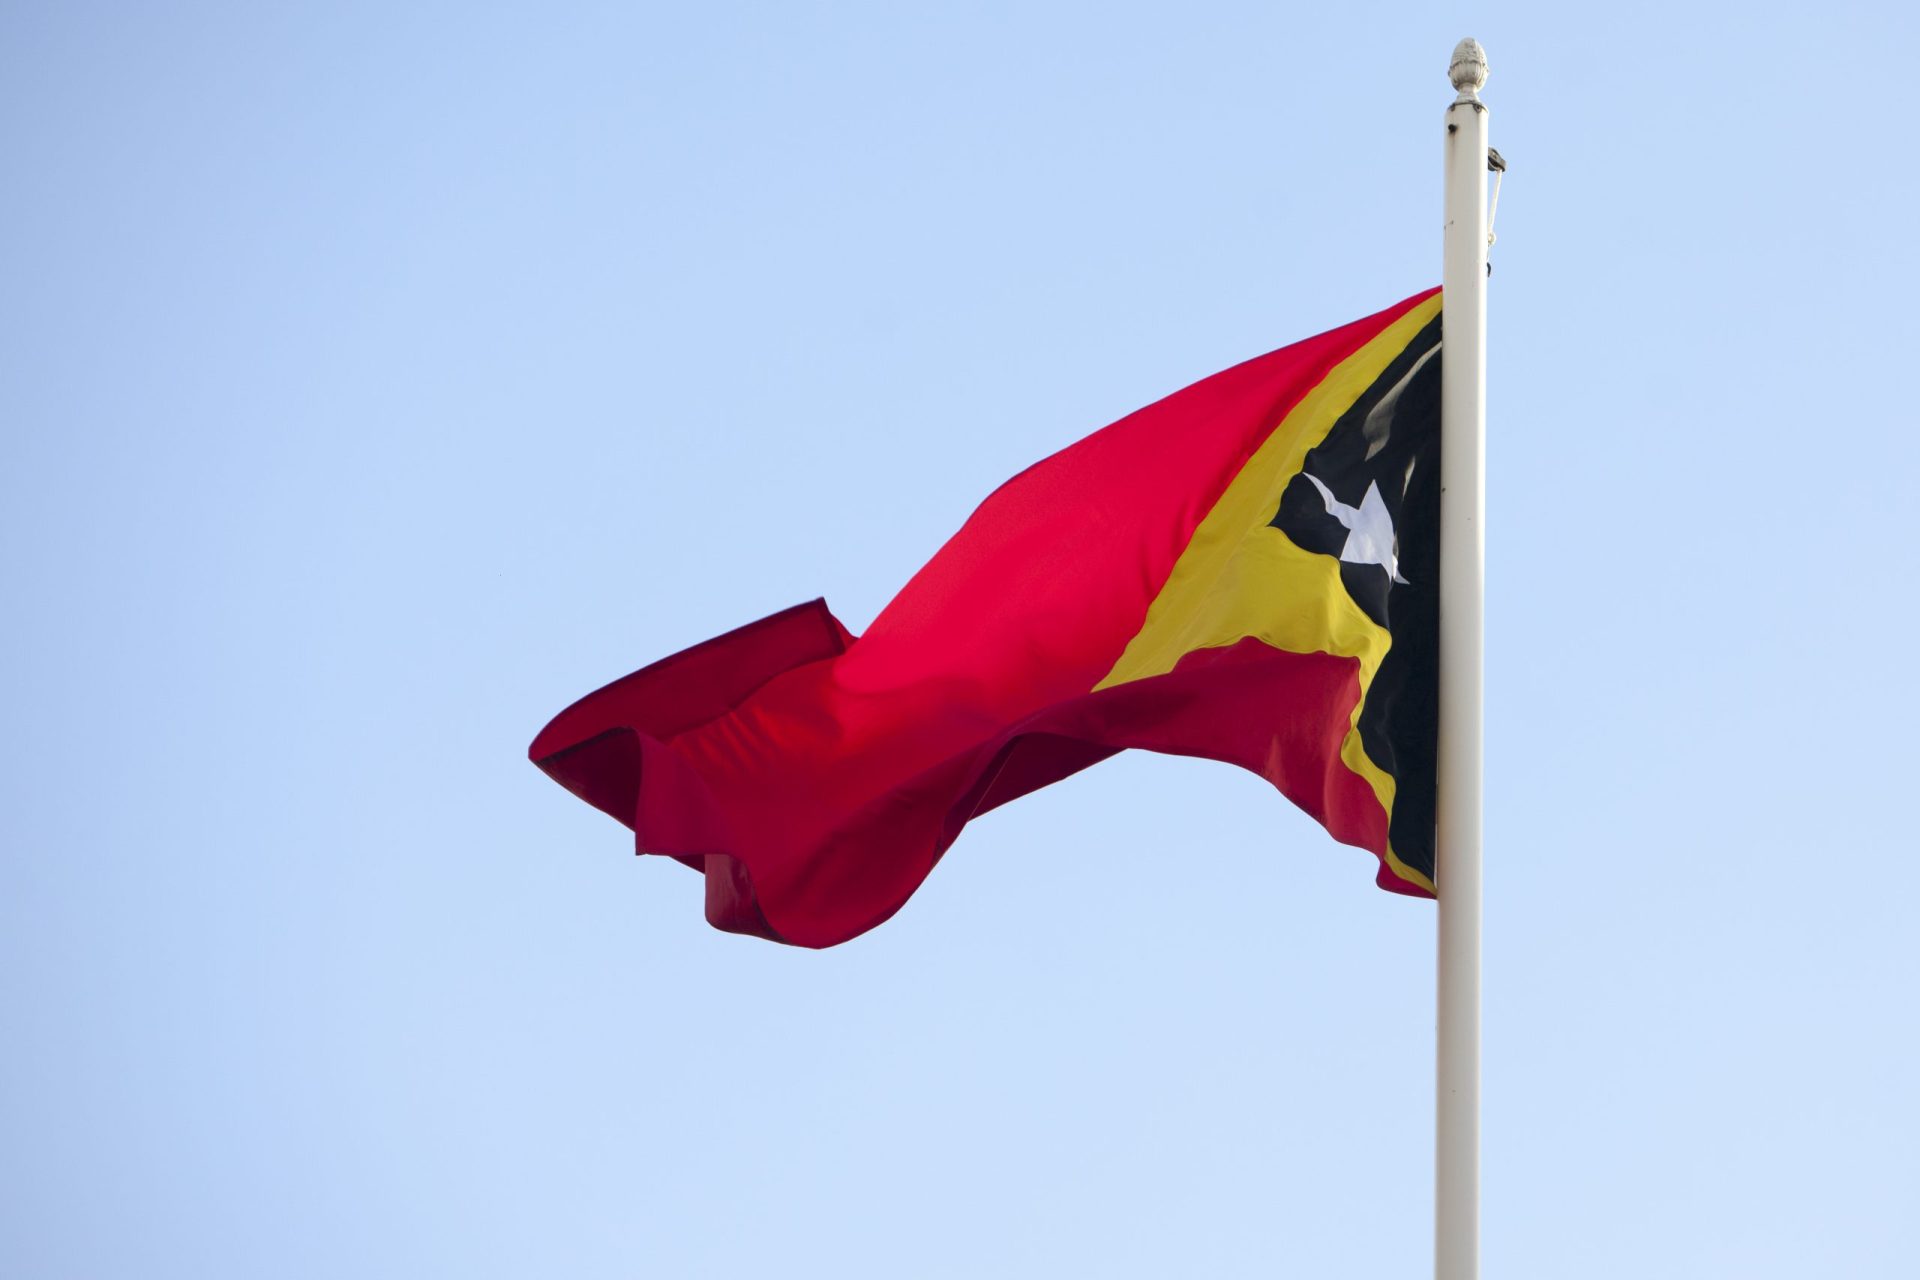 Governo de Timor-Leste ordena expulsão de magistrados portugueses